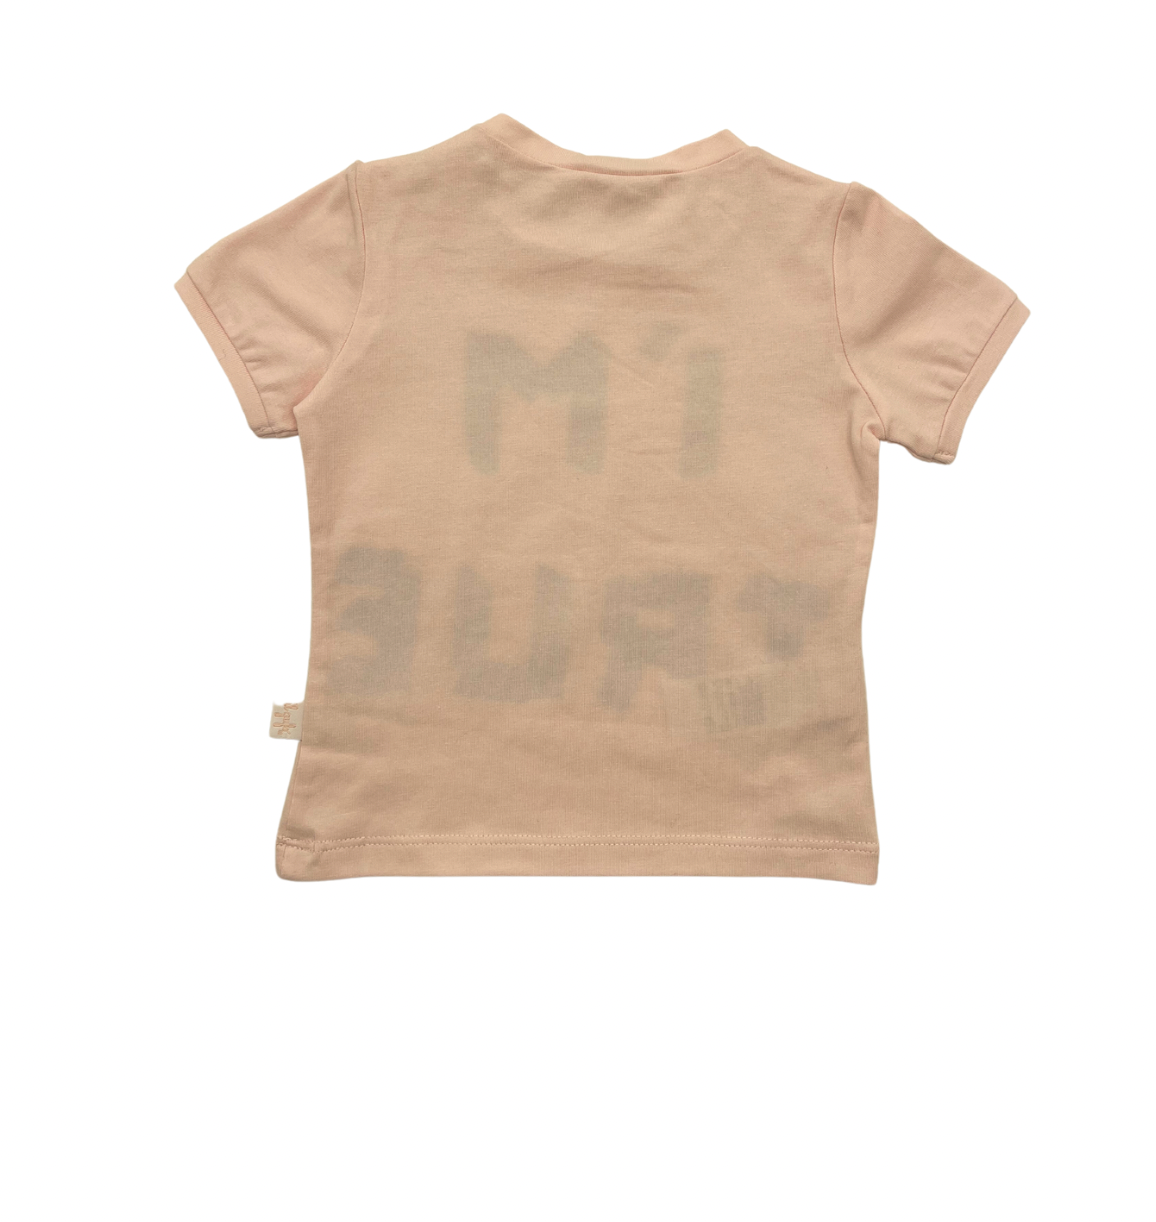 IL GUFO - "I'm true" T-shirt - 6 months